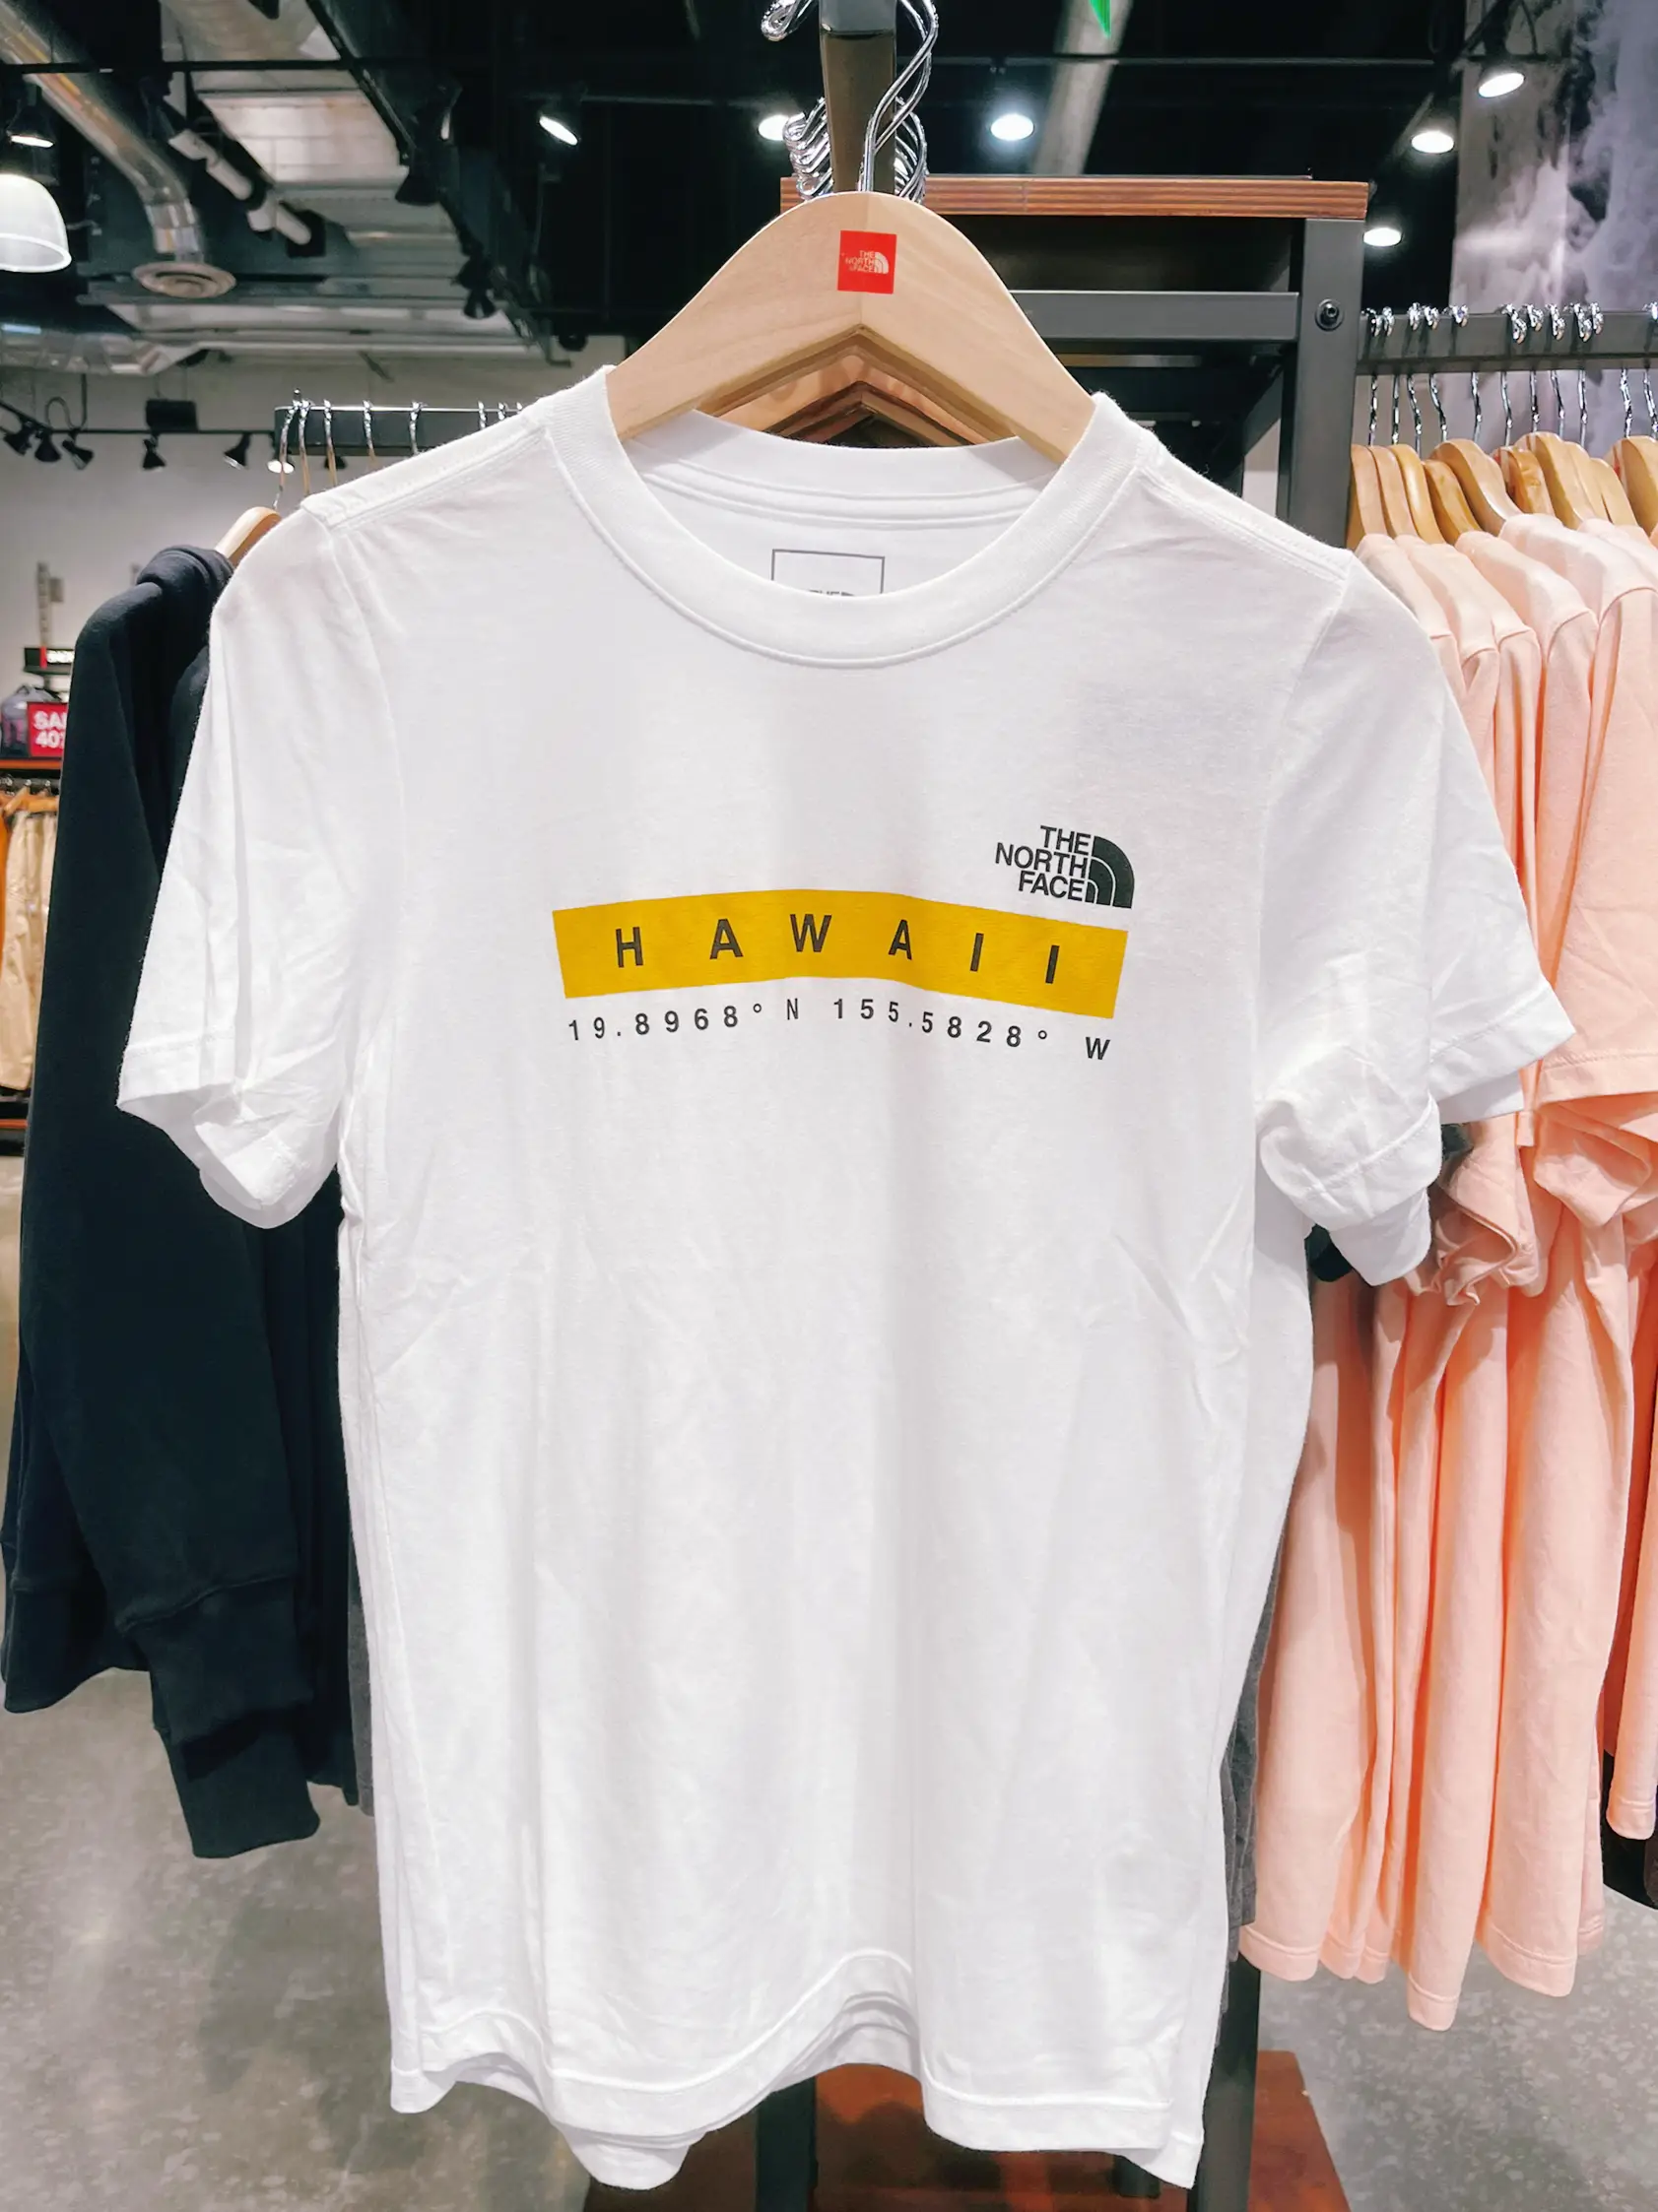 ハワイ限定Tシャツ】𝗧𝗵𝗲 𝗡𝗼𝗿𝘁𝗵 𝗙𝗮𝗰𝗲 | aloha.mihokoが投稿 